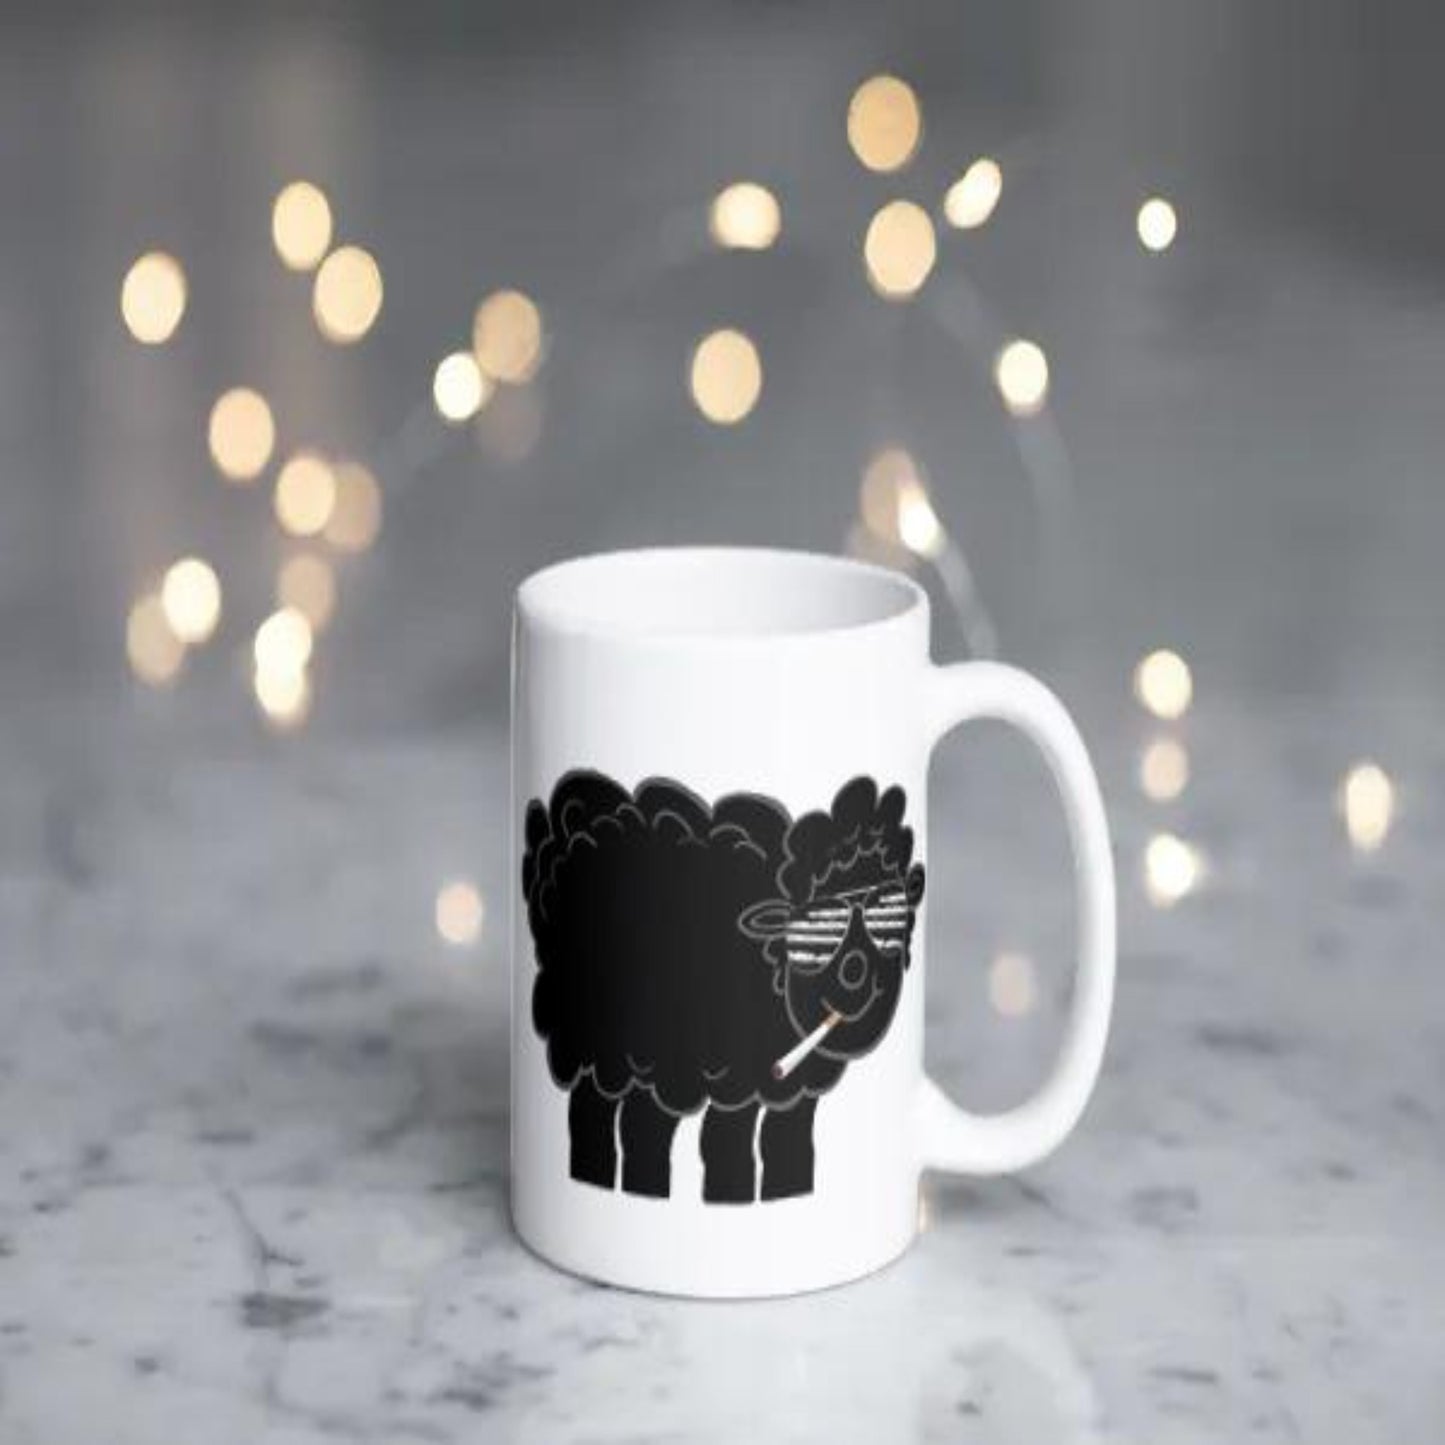 Black Sheep Coffee Mug - Lines